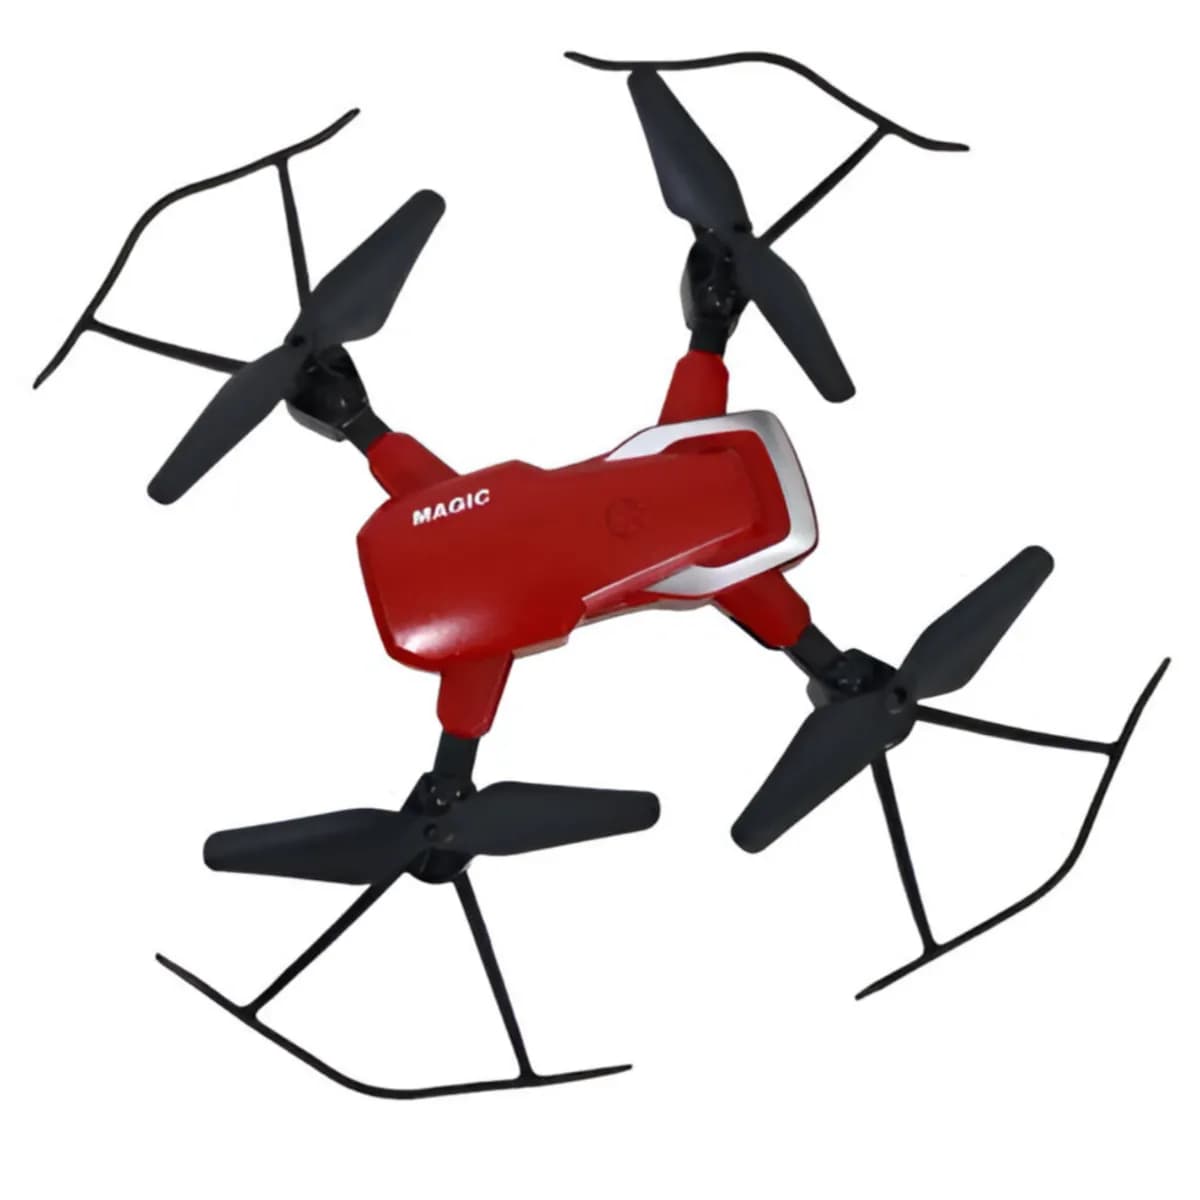 Magic Remote Control Quadcopter Drone Toy - (DEGB06)